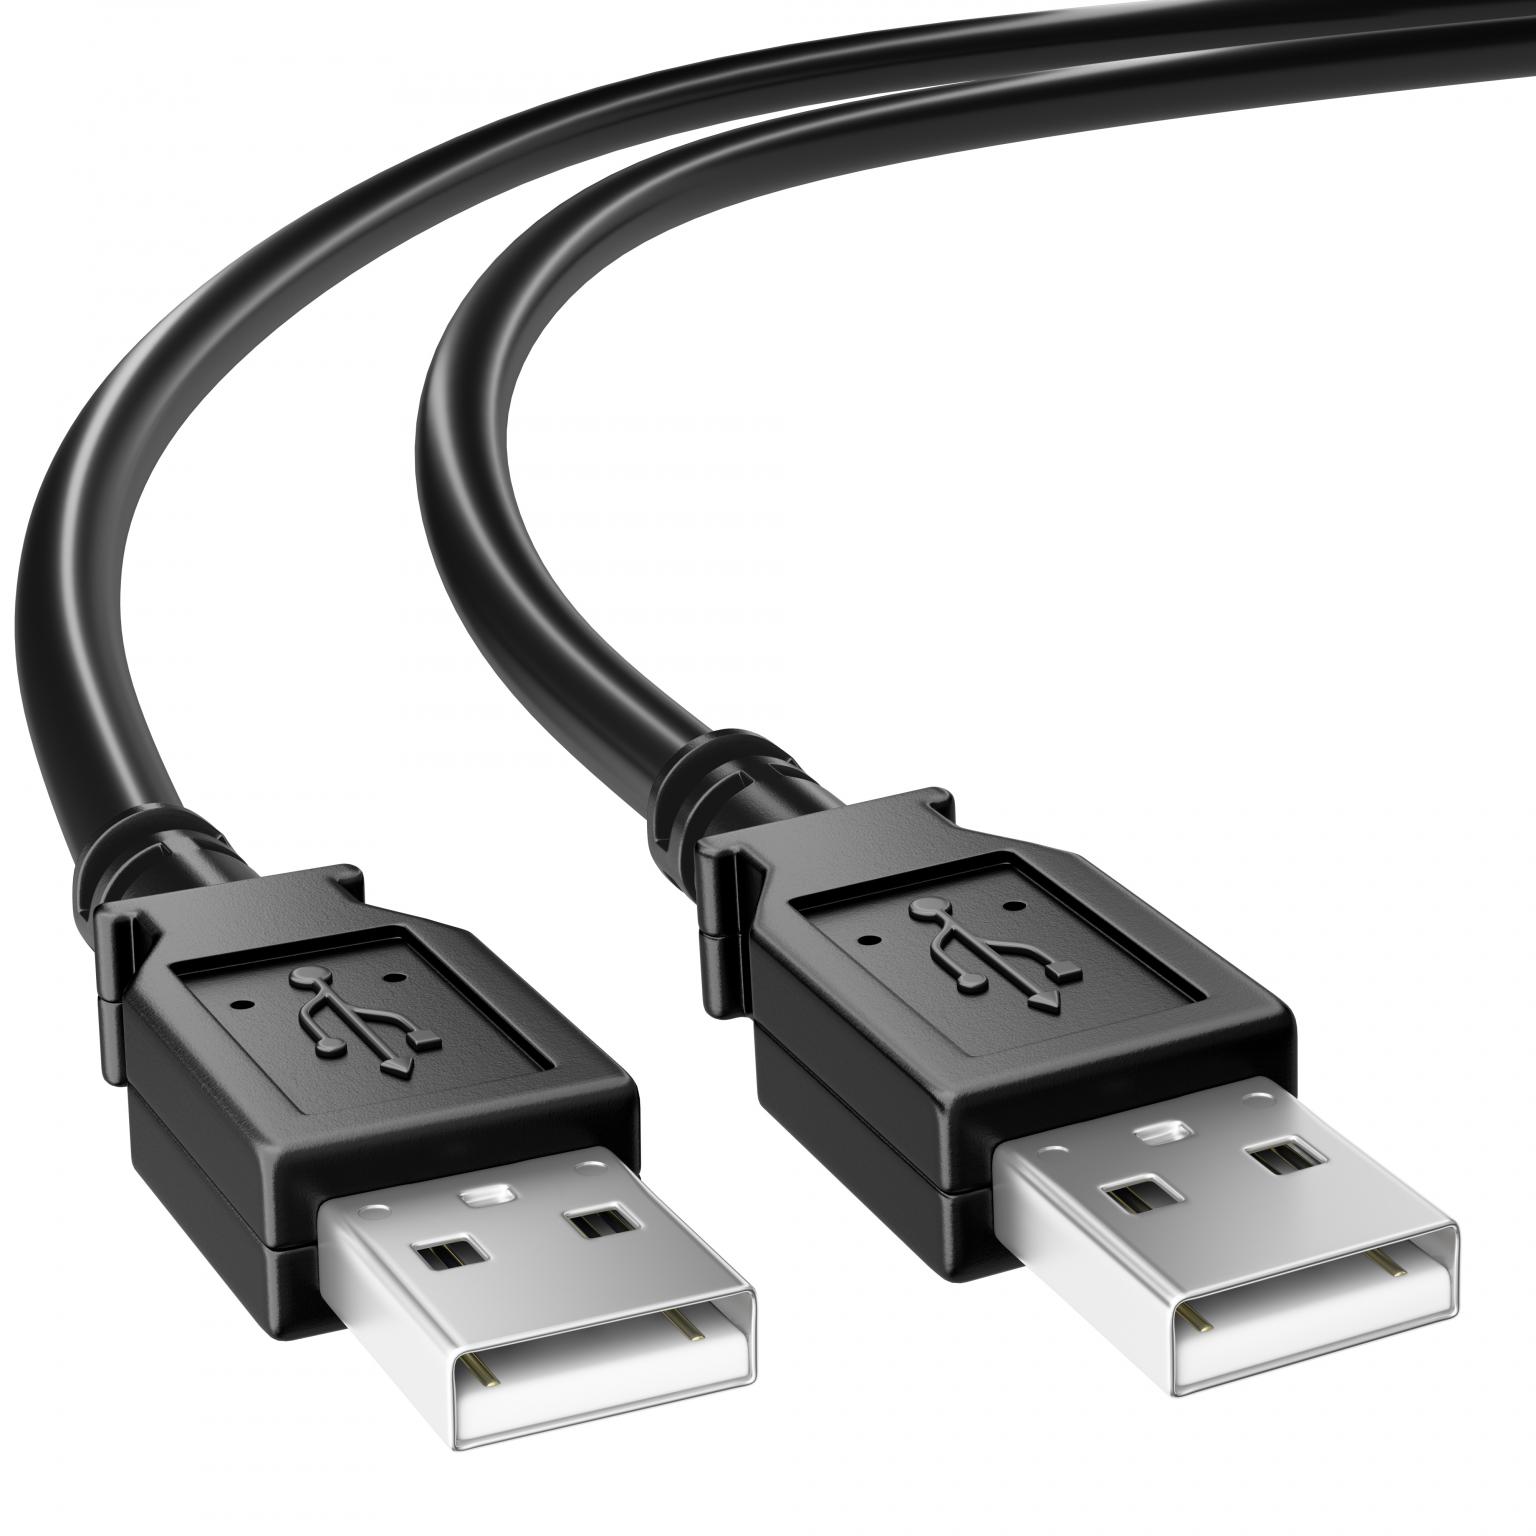 Raadplegen puur Vertrouwen USB 2.0 Kabel - USB 2.0 kabel, Connector 1: USB A male, Connector 2: USB A  male, 3 meter.